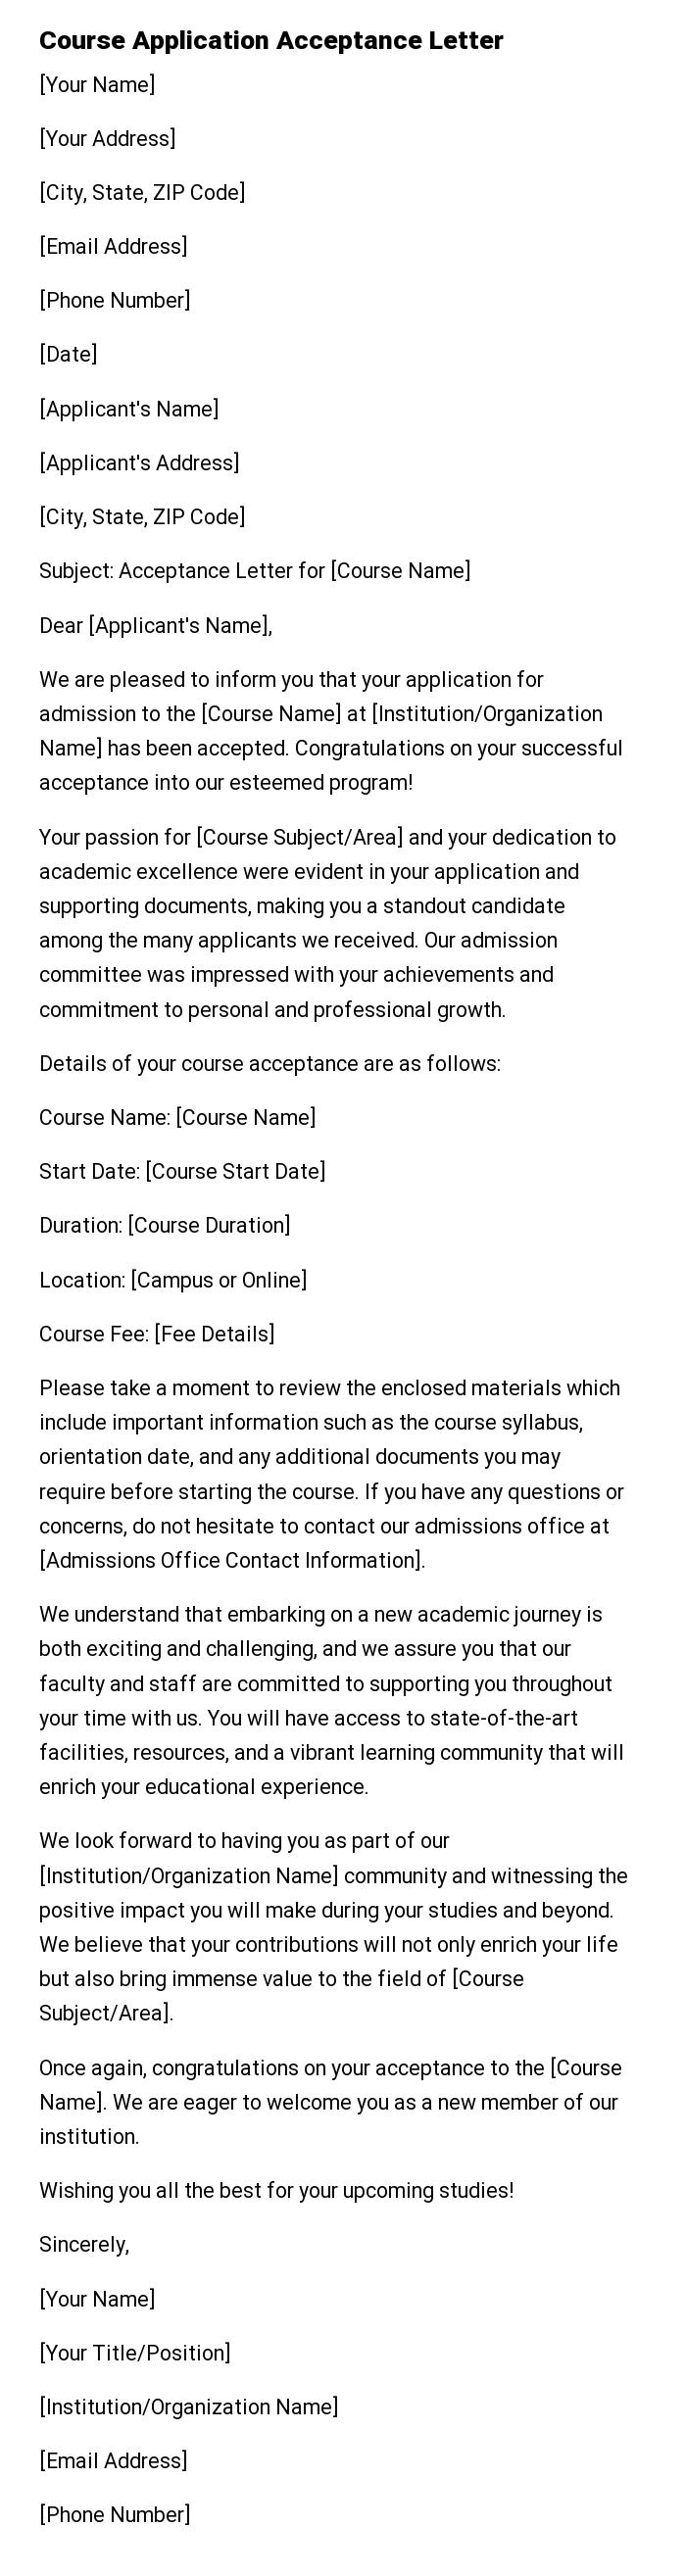 Course Application Acceptance Letter